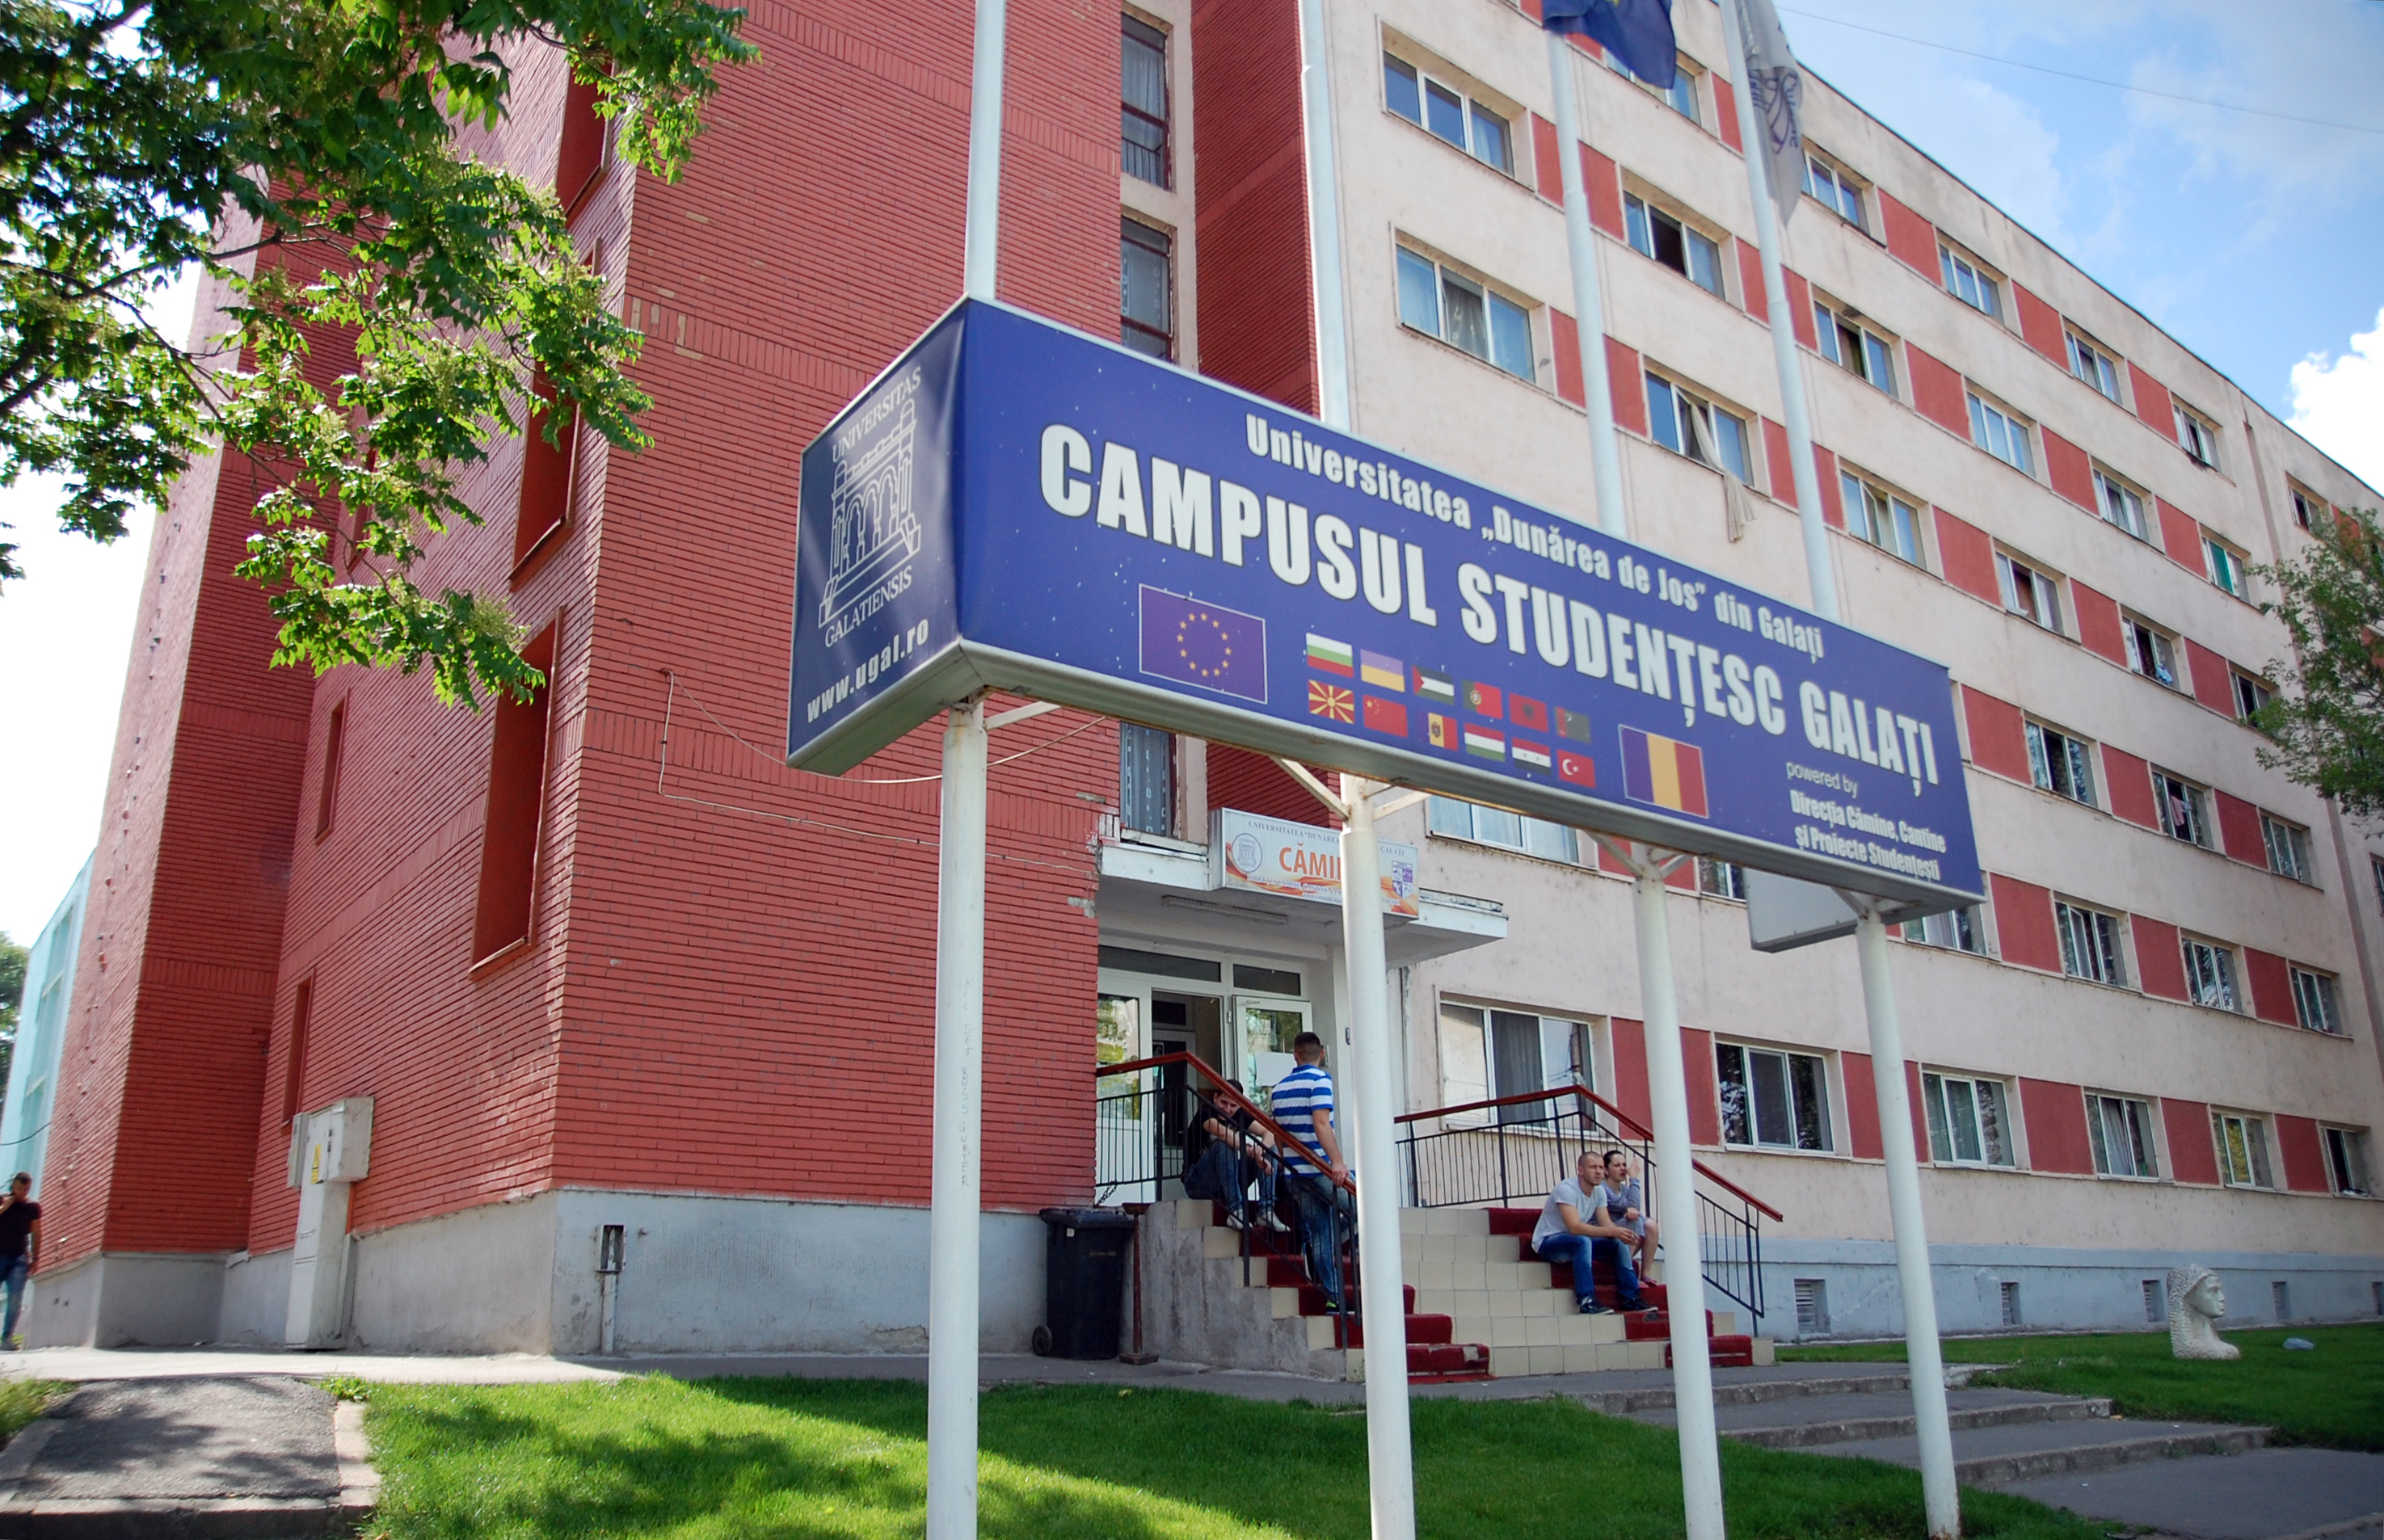 Campusul Studențesc Galați